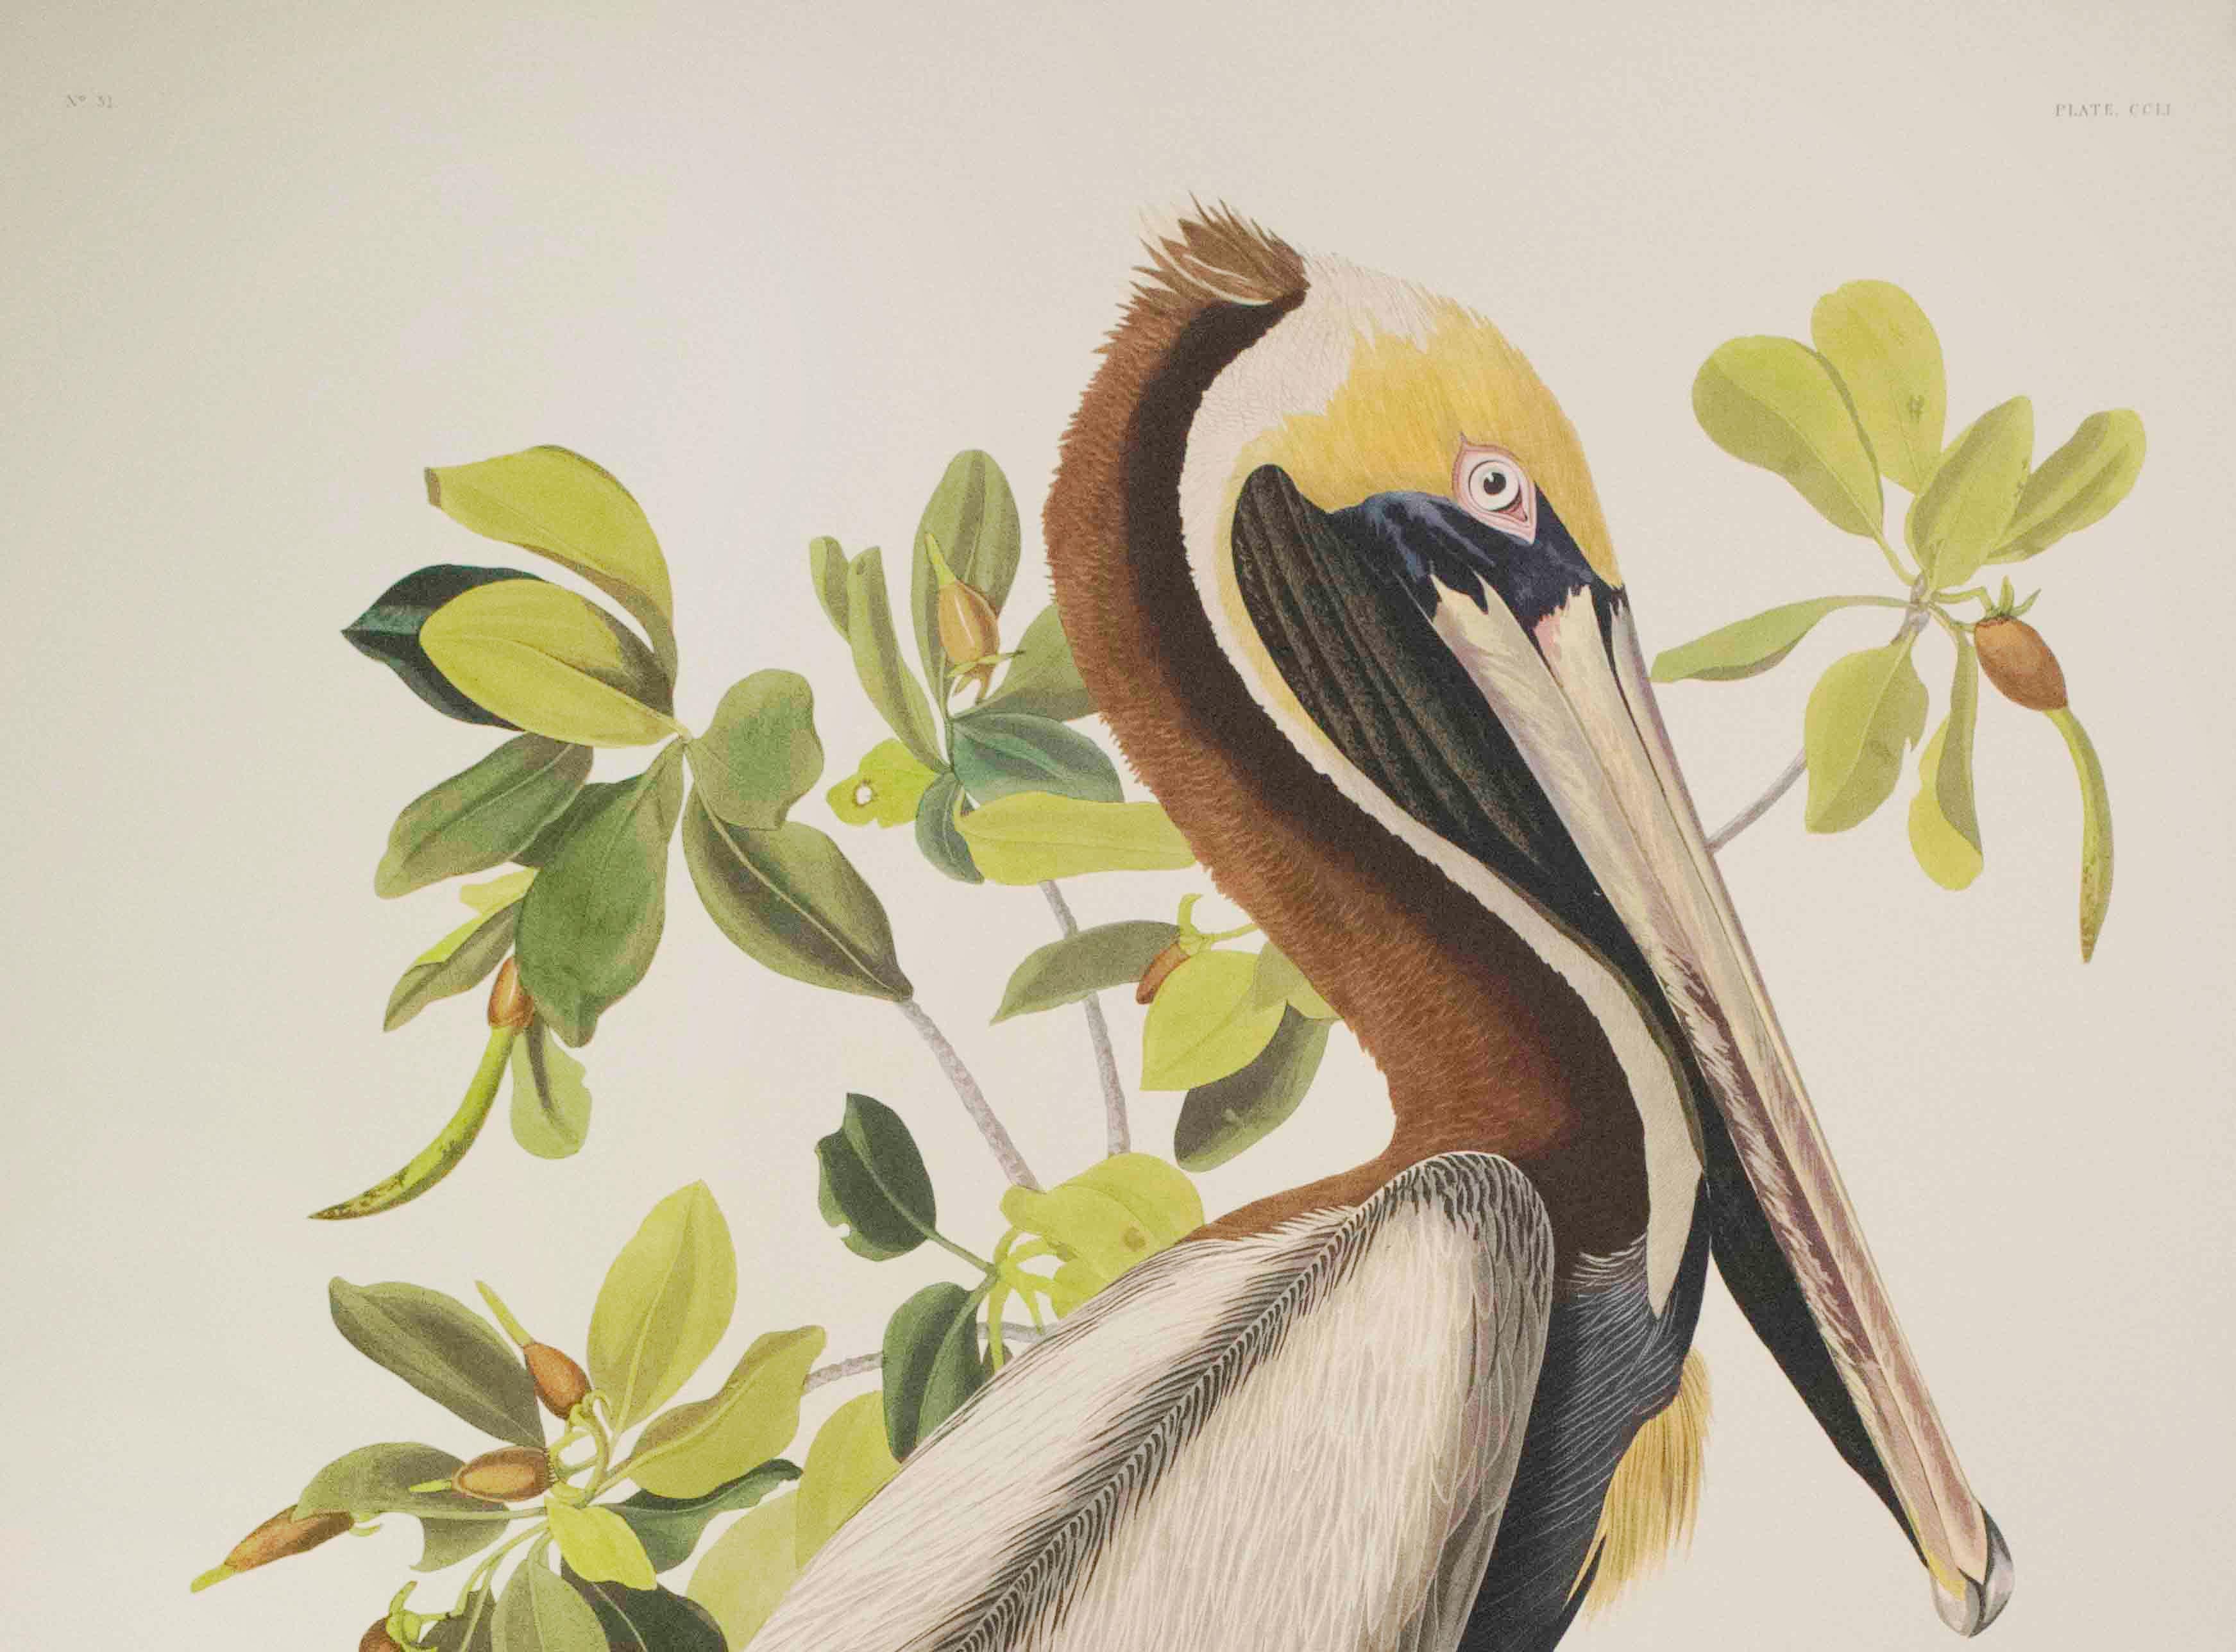 Brauner Pelikan in Braun, Auflage Pl. 251 – Print von After John James Audubon